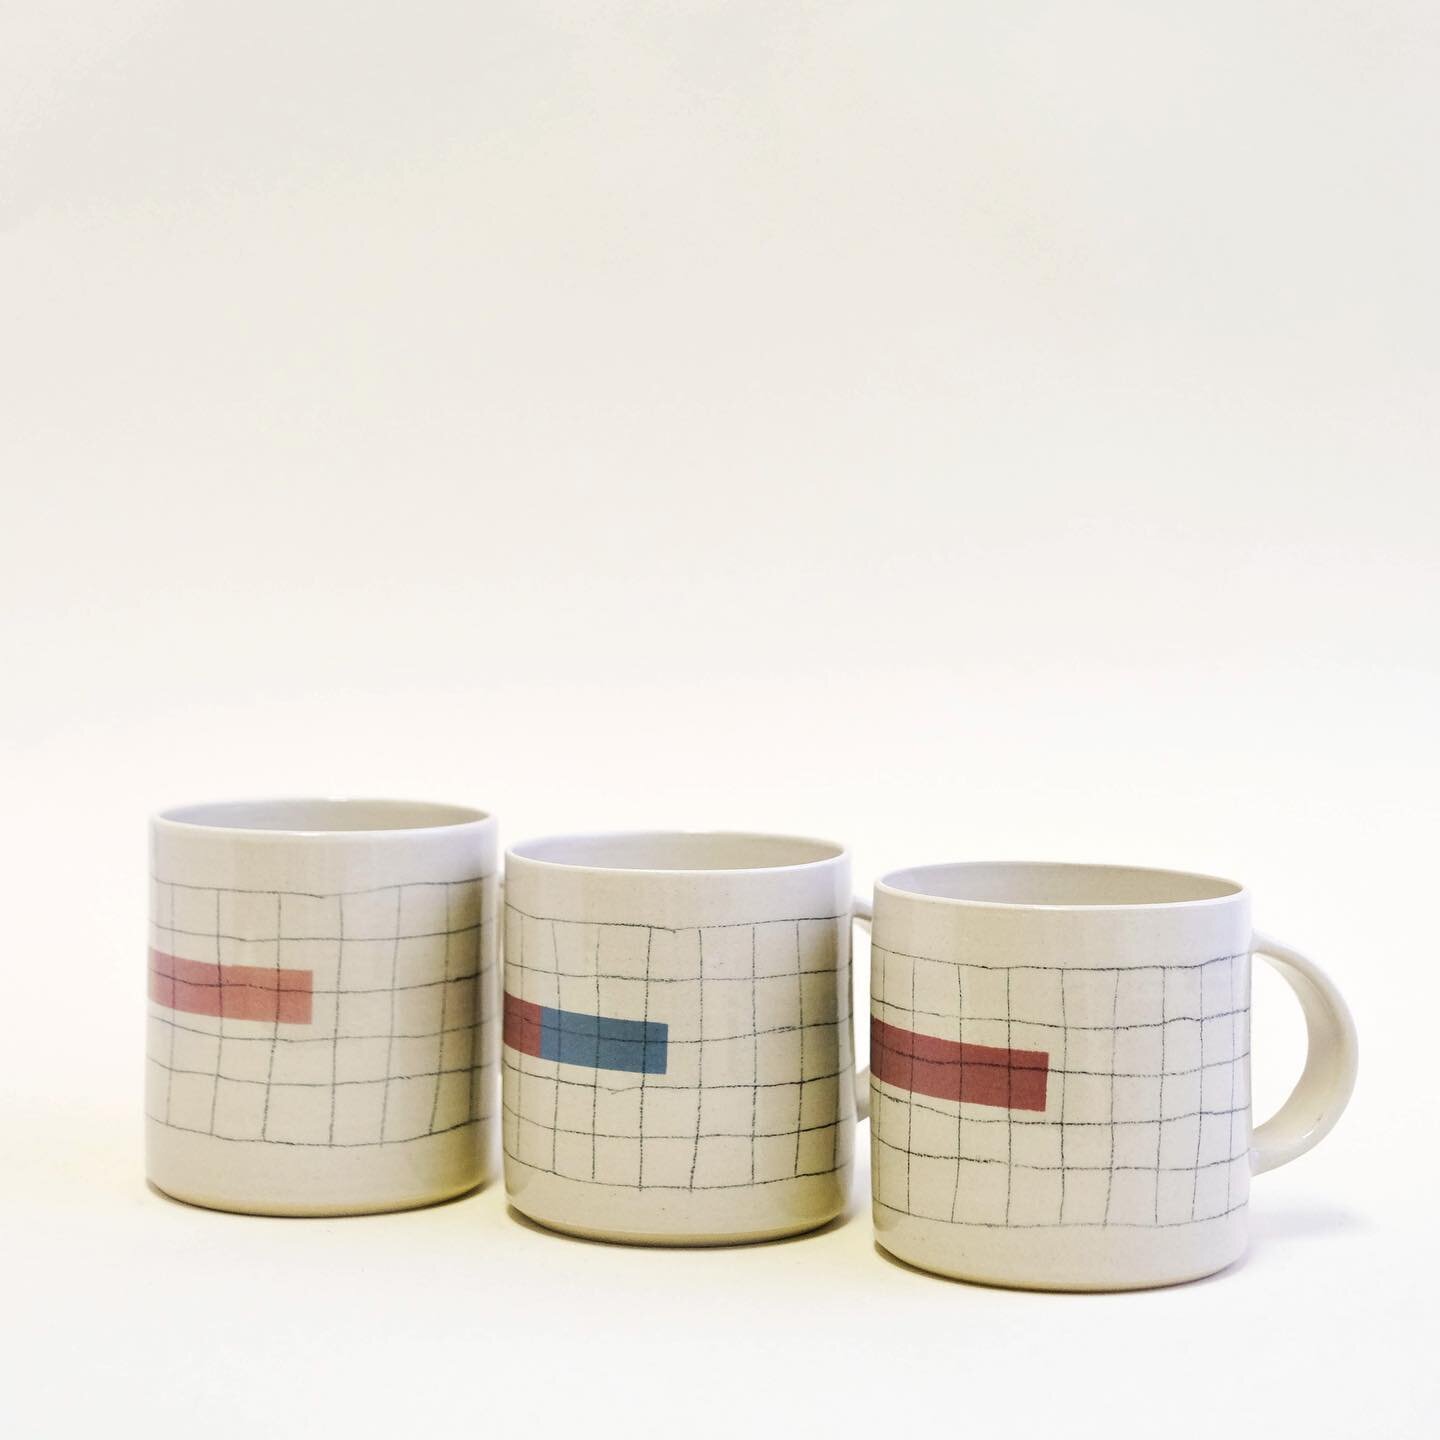 Tea mugs are available in @biskvit.trgovina 🫖